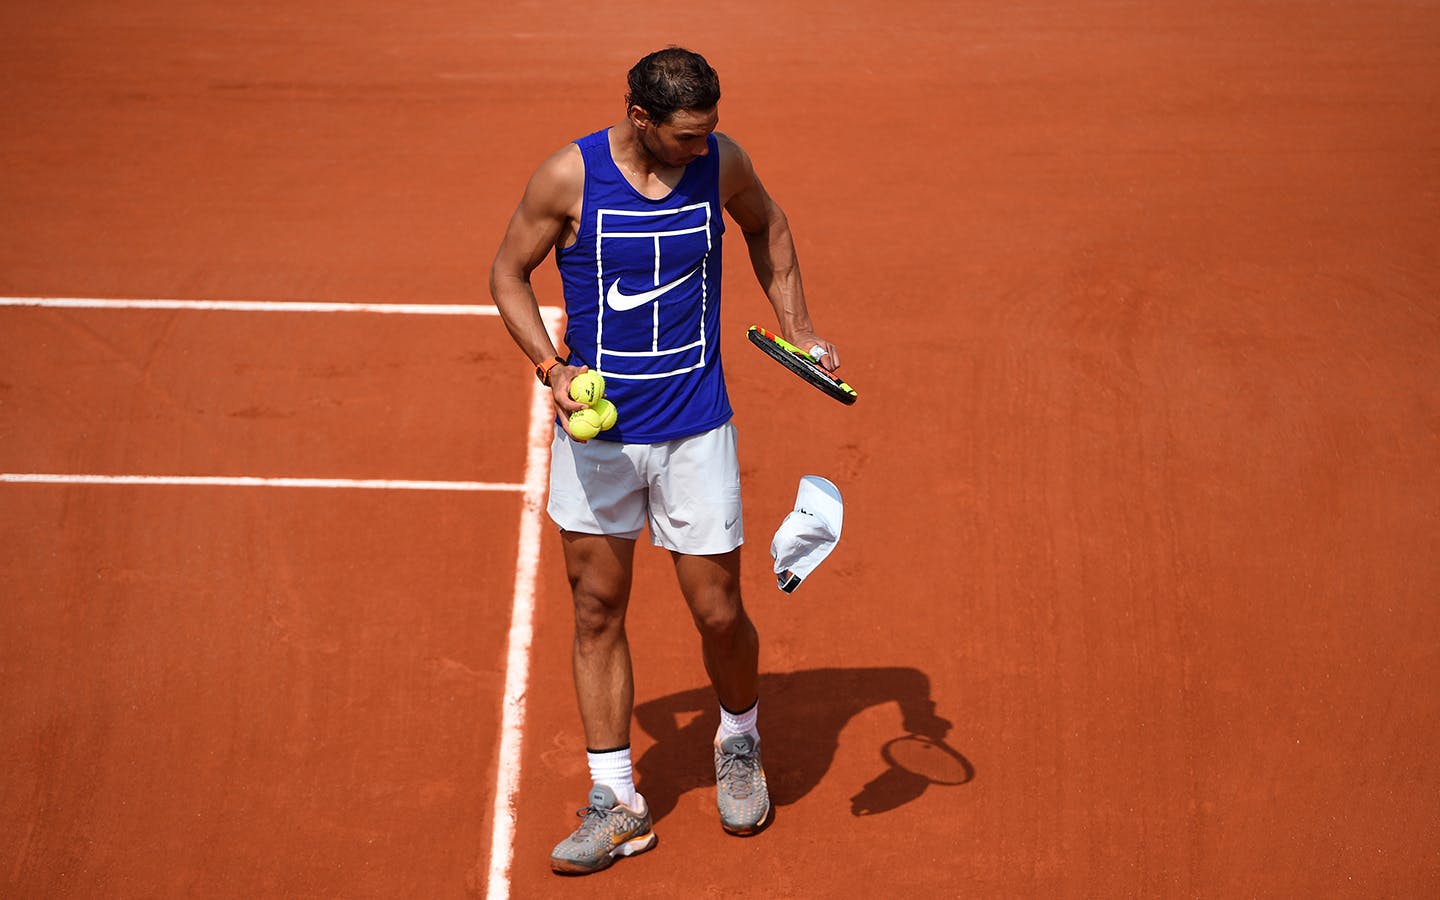 Nadal Returns To Roland Garros Garros 2021 Roland Garros Tournament Official Site